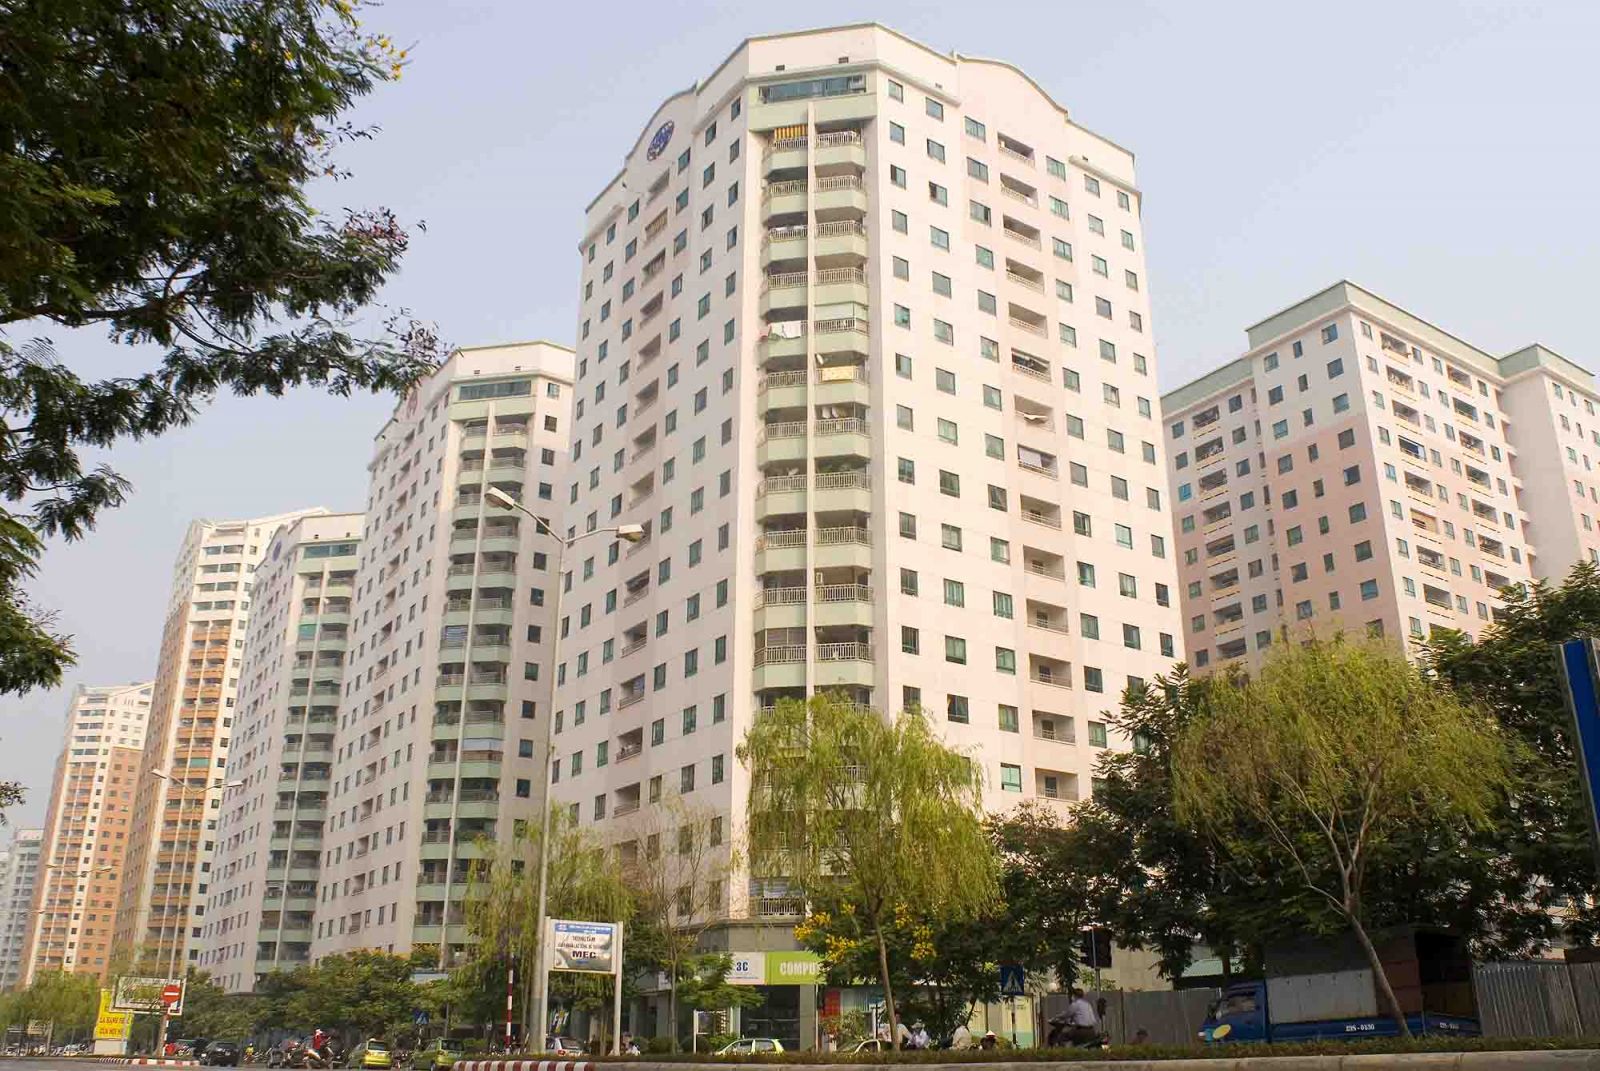 Thị trường chung cư, nhà phố cho thuê tại Hà Nội tăng trưởng ấn tượng